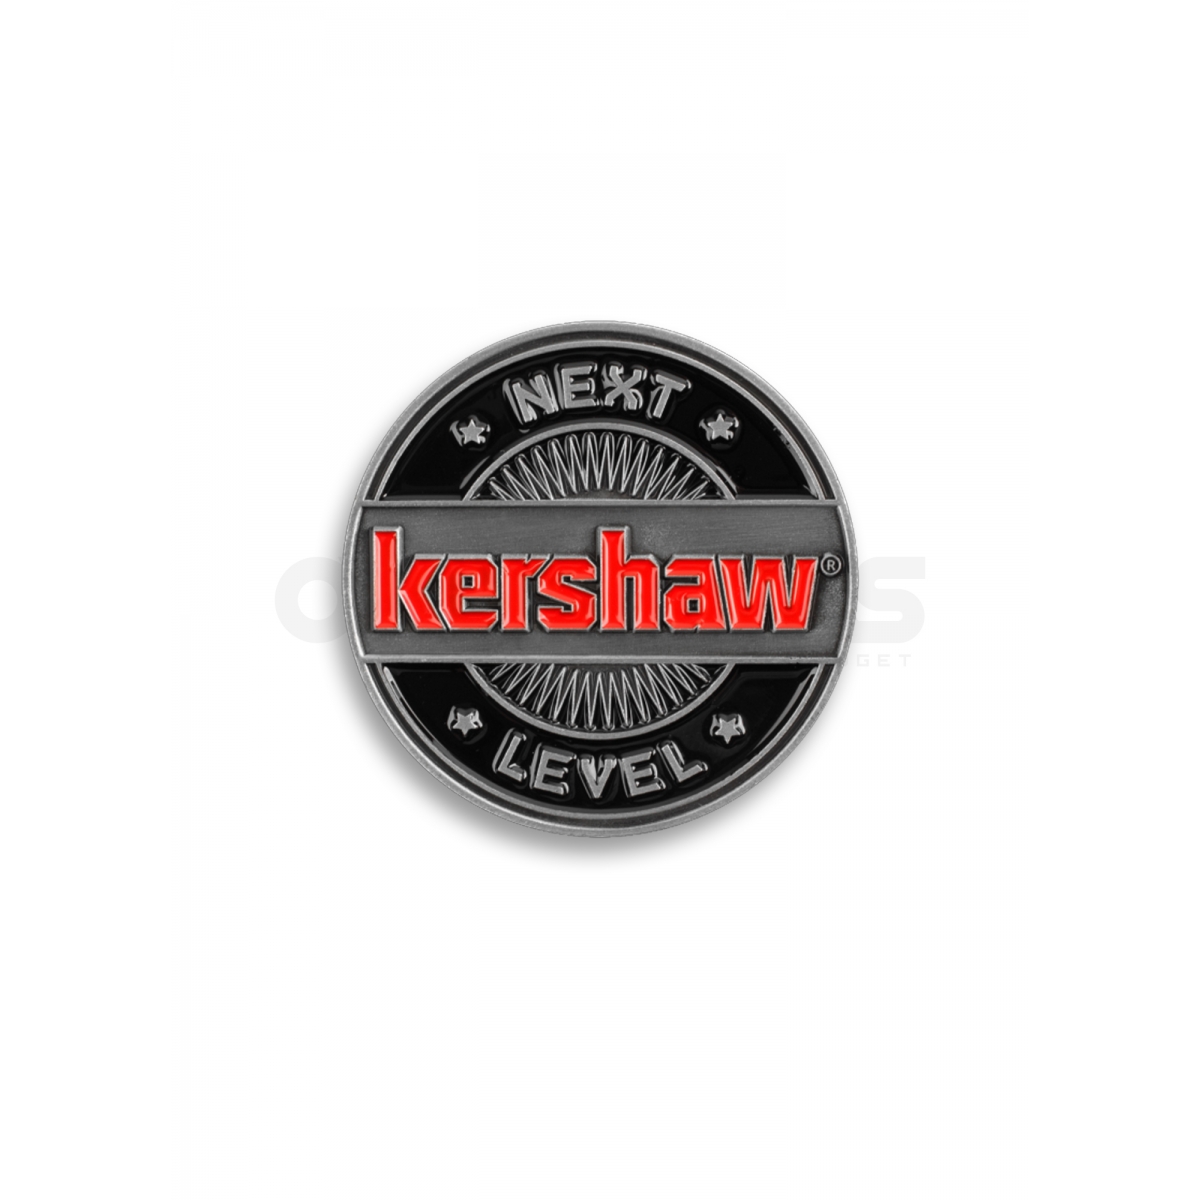 Kershaw "Next Level" Challenge Coin, CHALLENGECOINKER